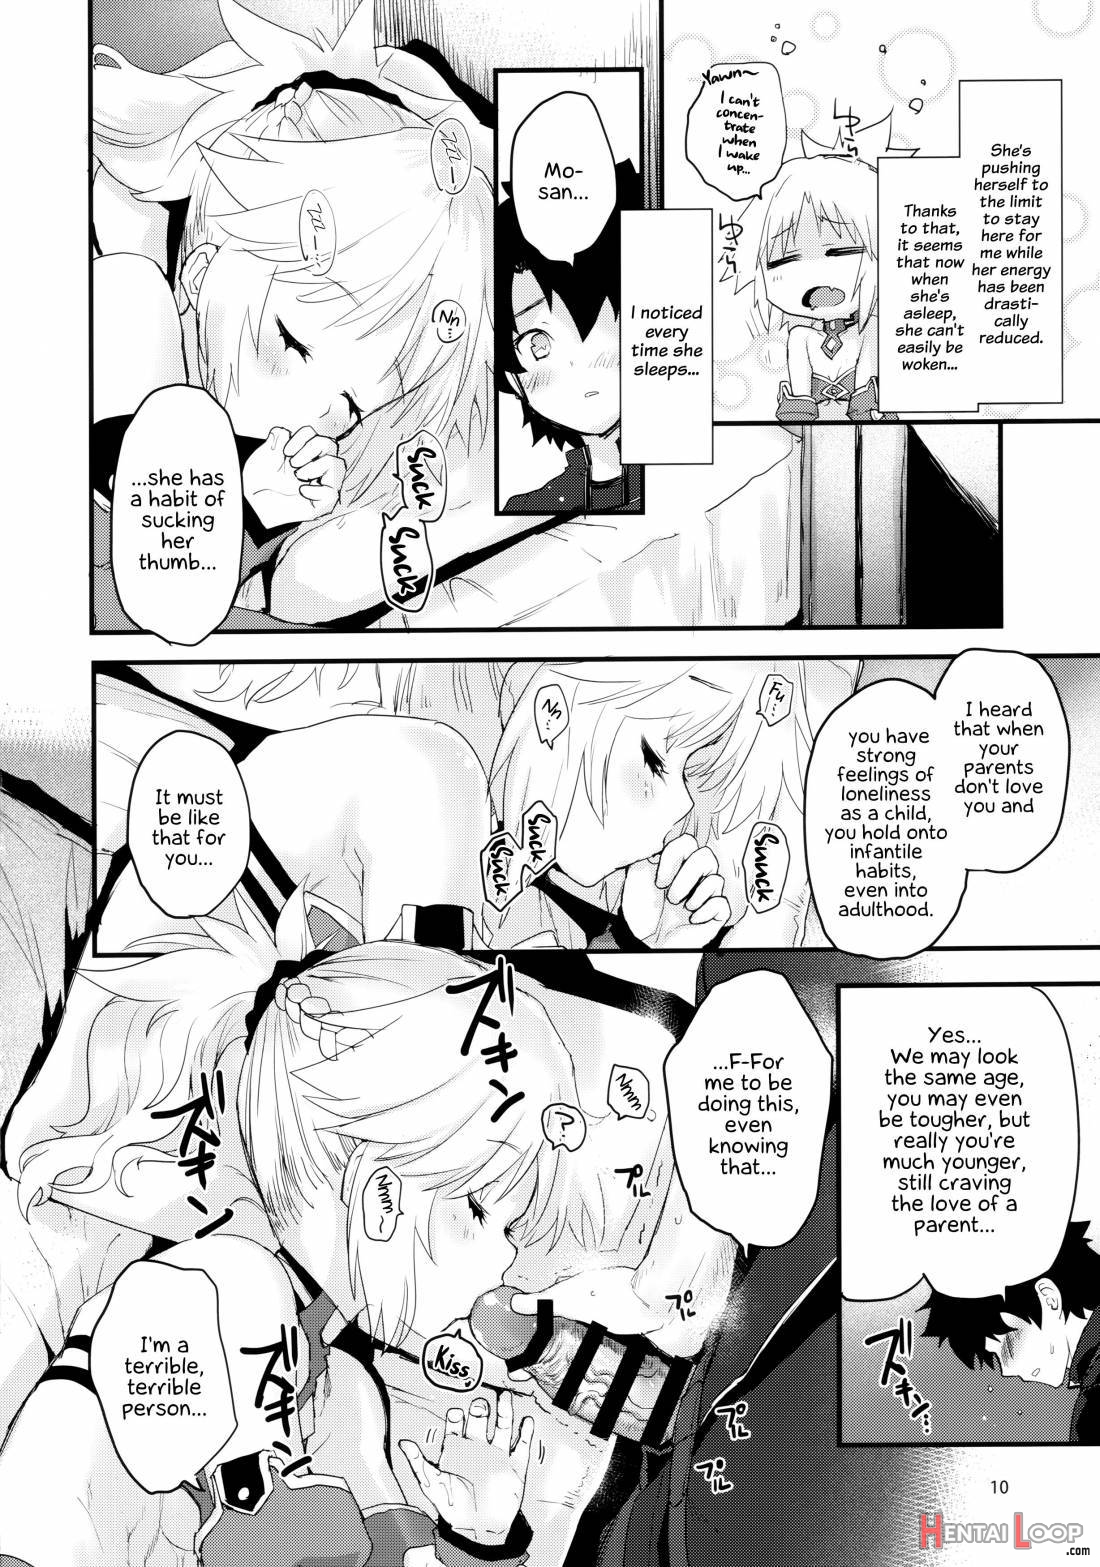 Gomen Ne Mo-san… page 9